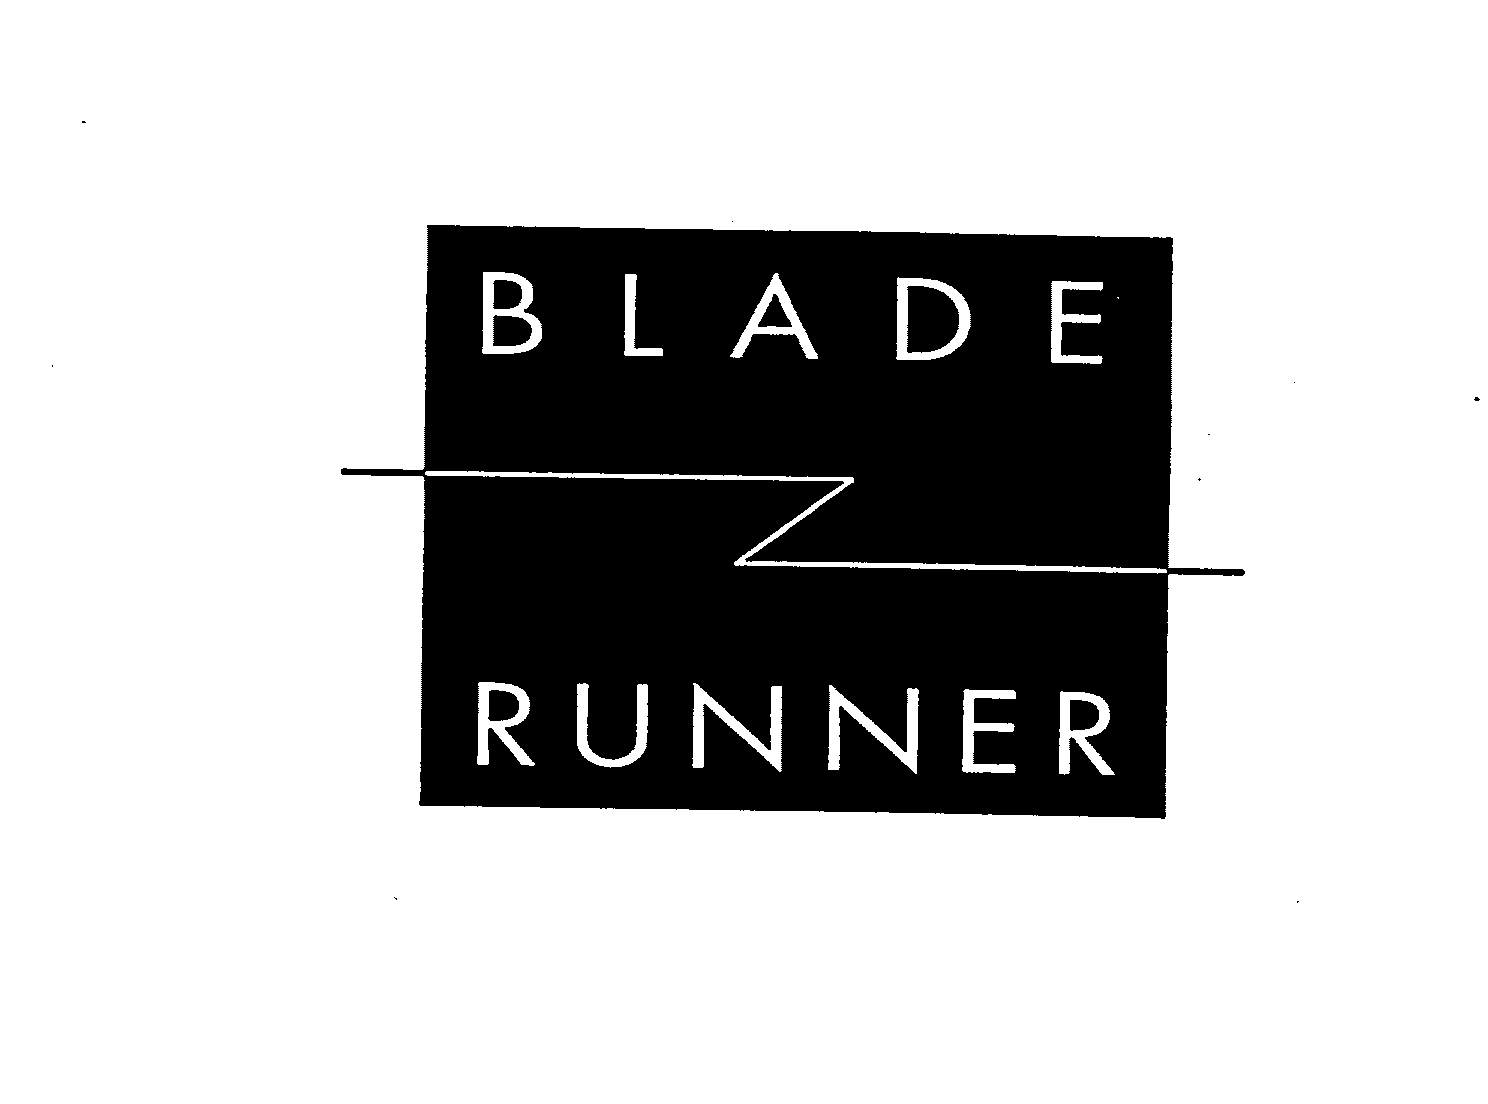 BLADE RUNNER